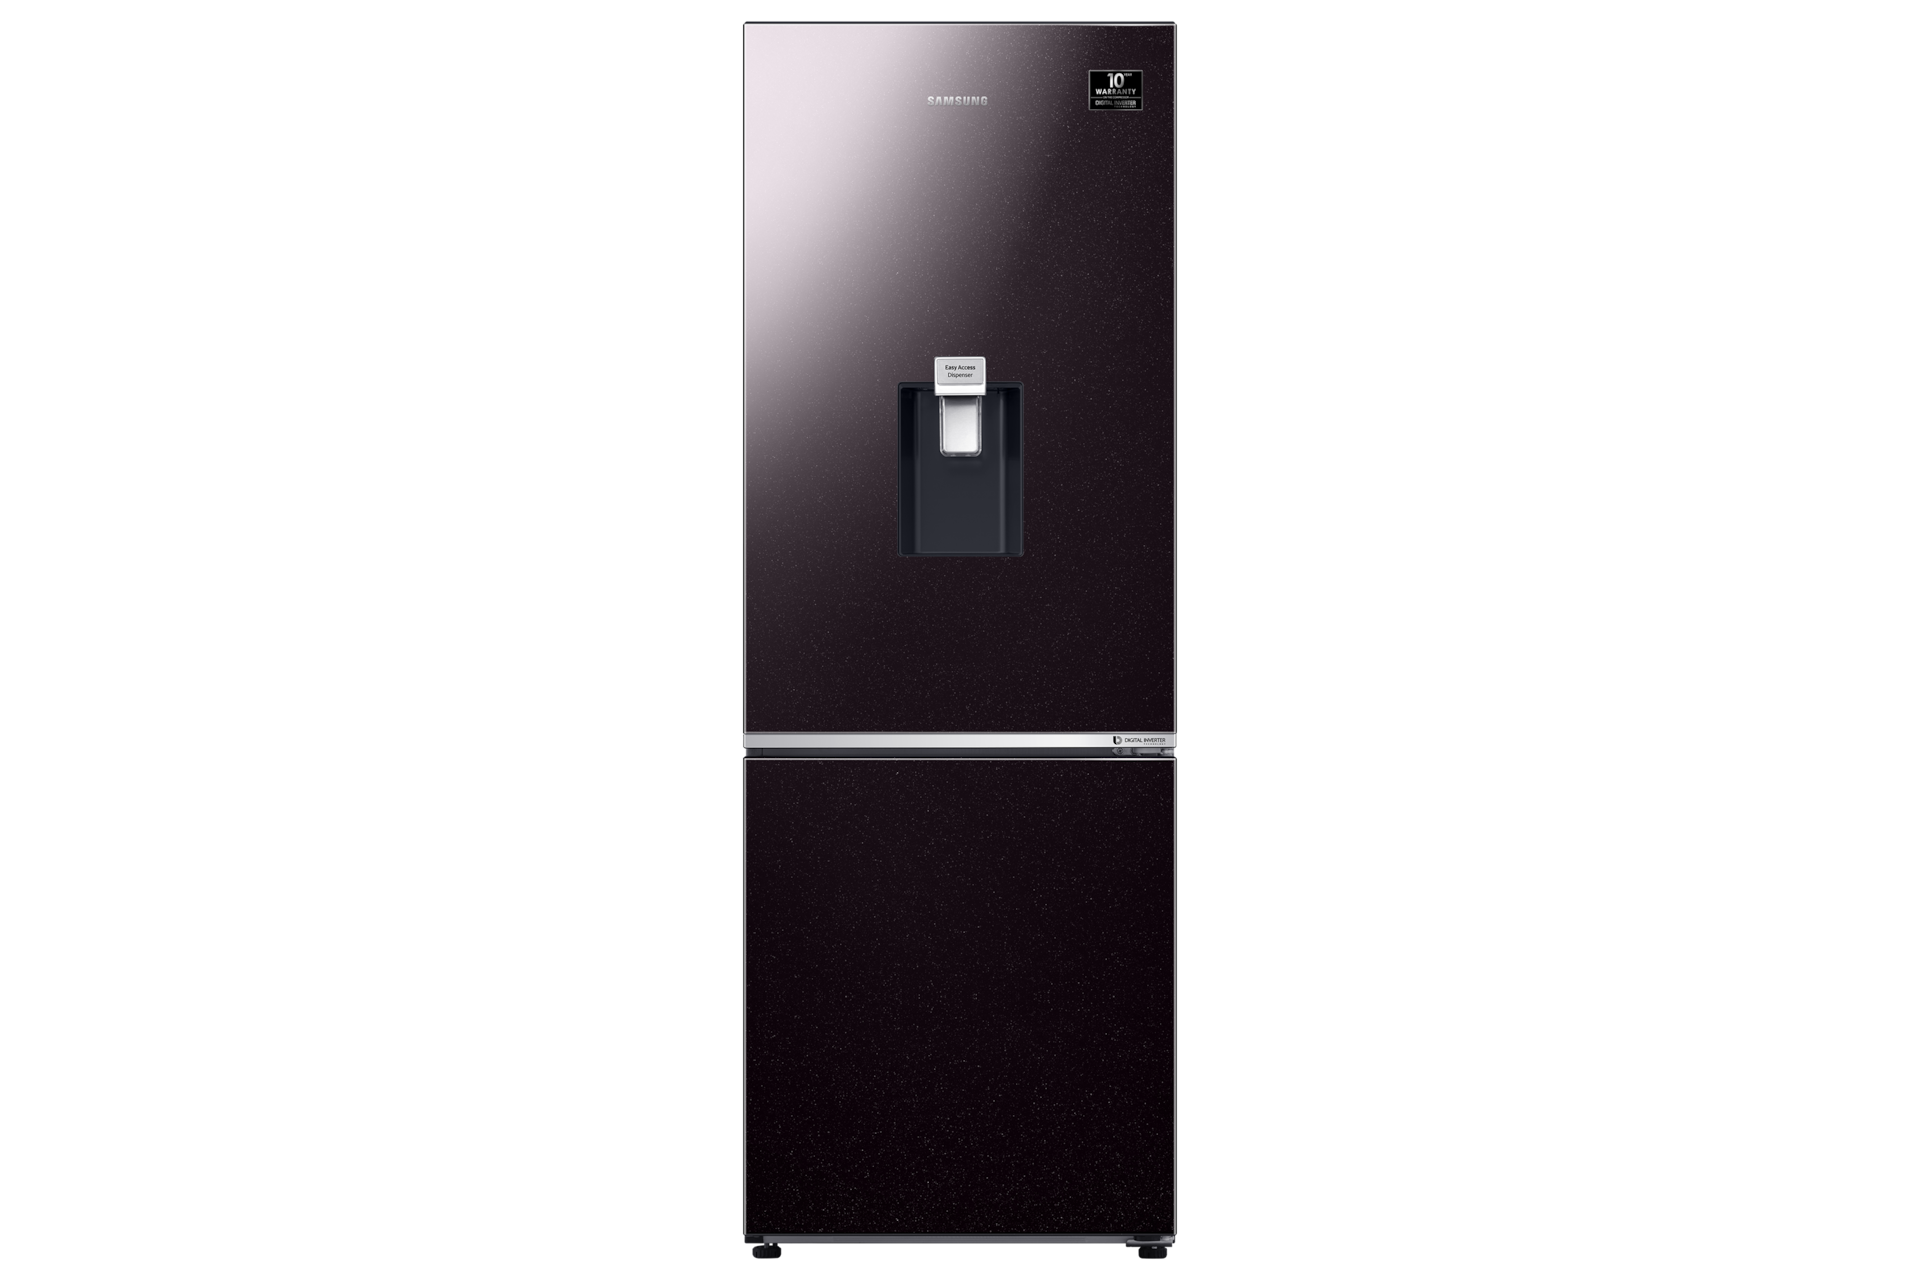 Tủ lạnh Samsung Inverter 307 lít RB30N4190BY SV hai cửa ngăn đông dưới với thiết kế phẳng, tinh giản đạt chuẩn Châu Âu phù hợp mọi không gian sống